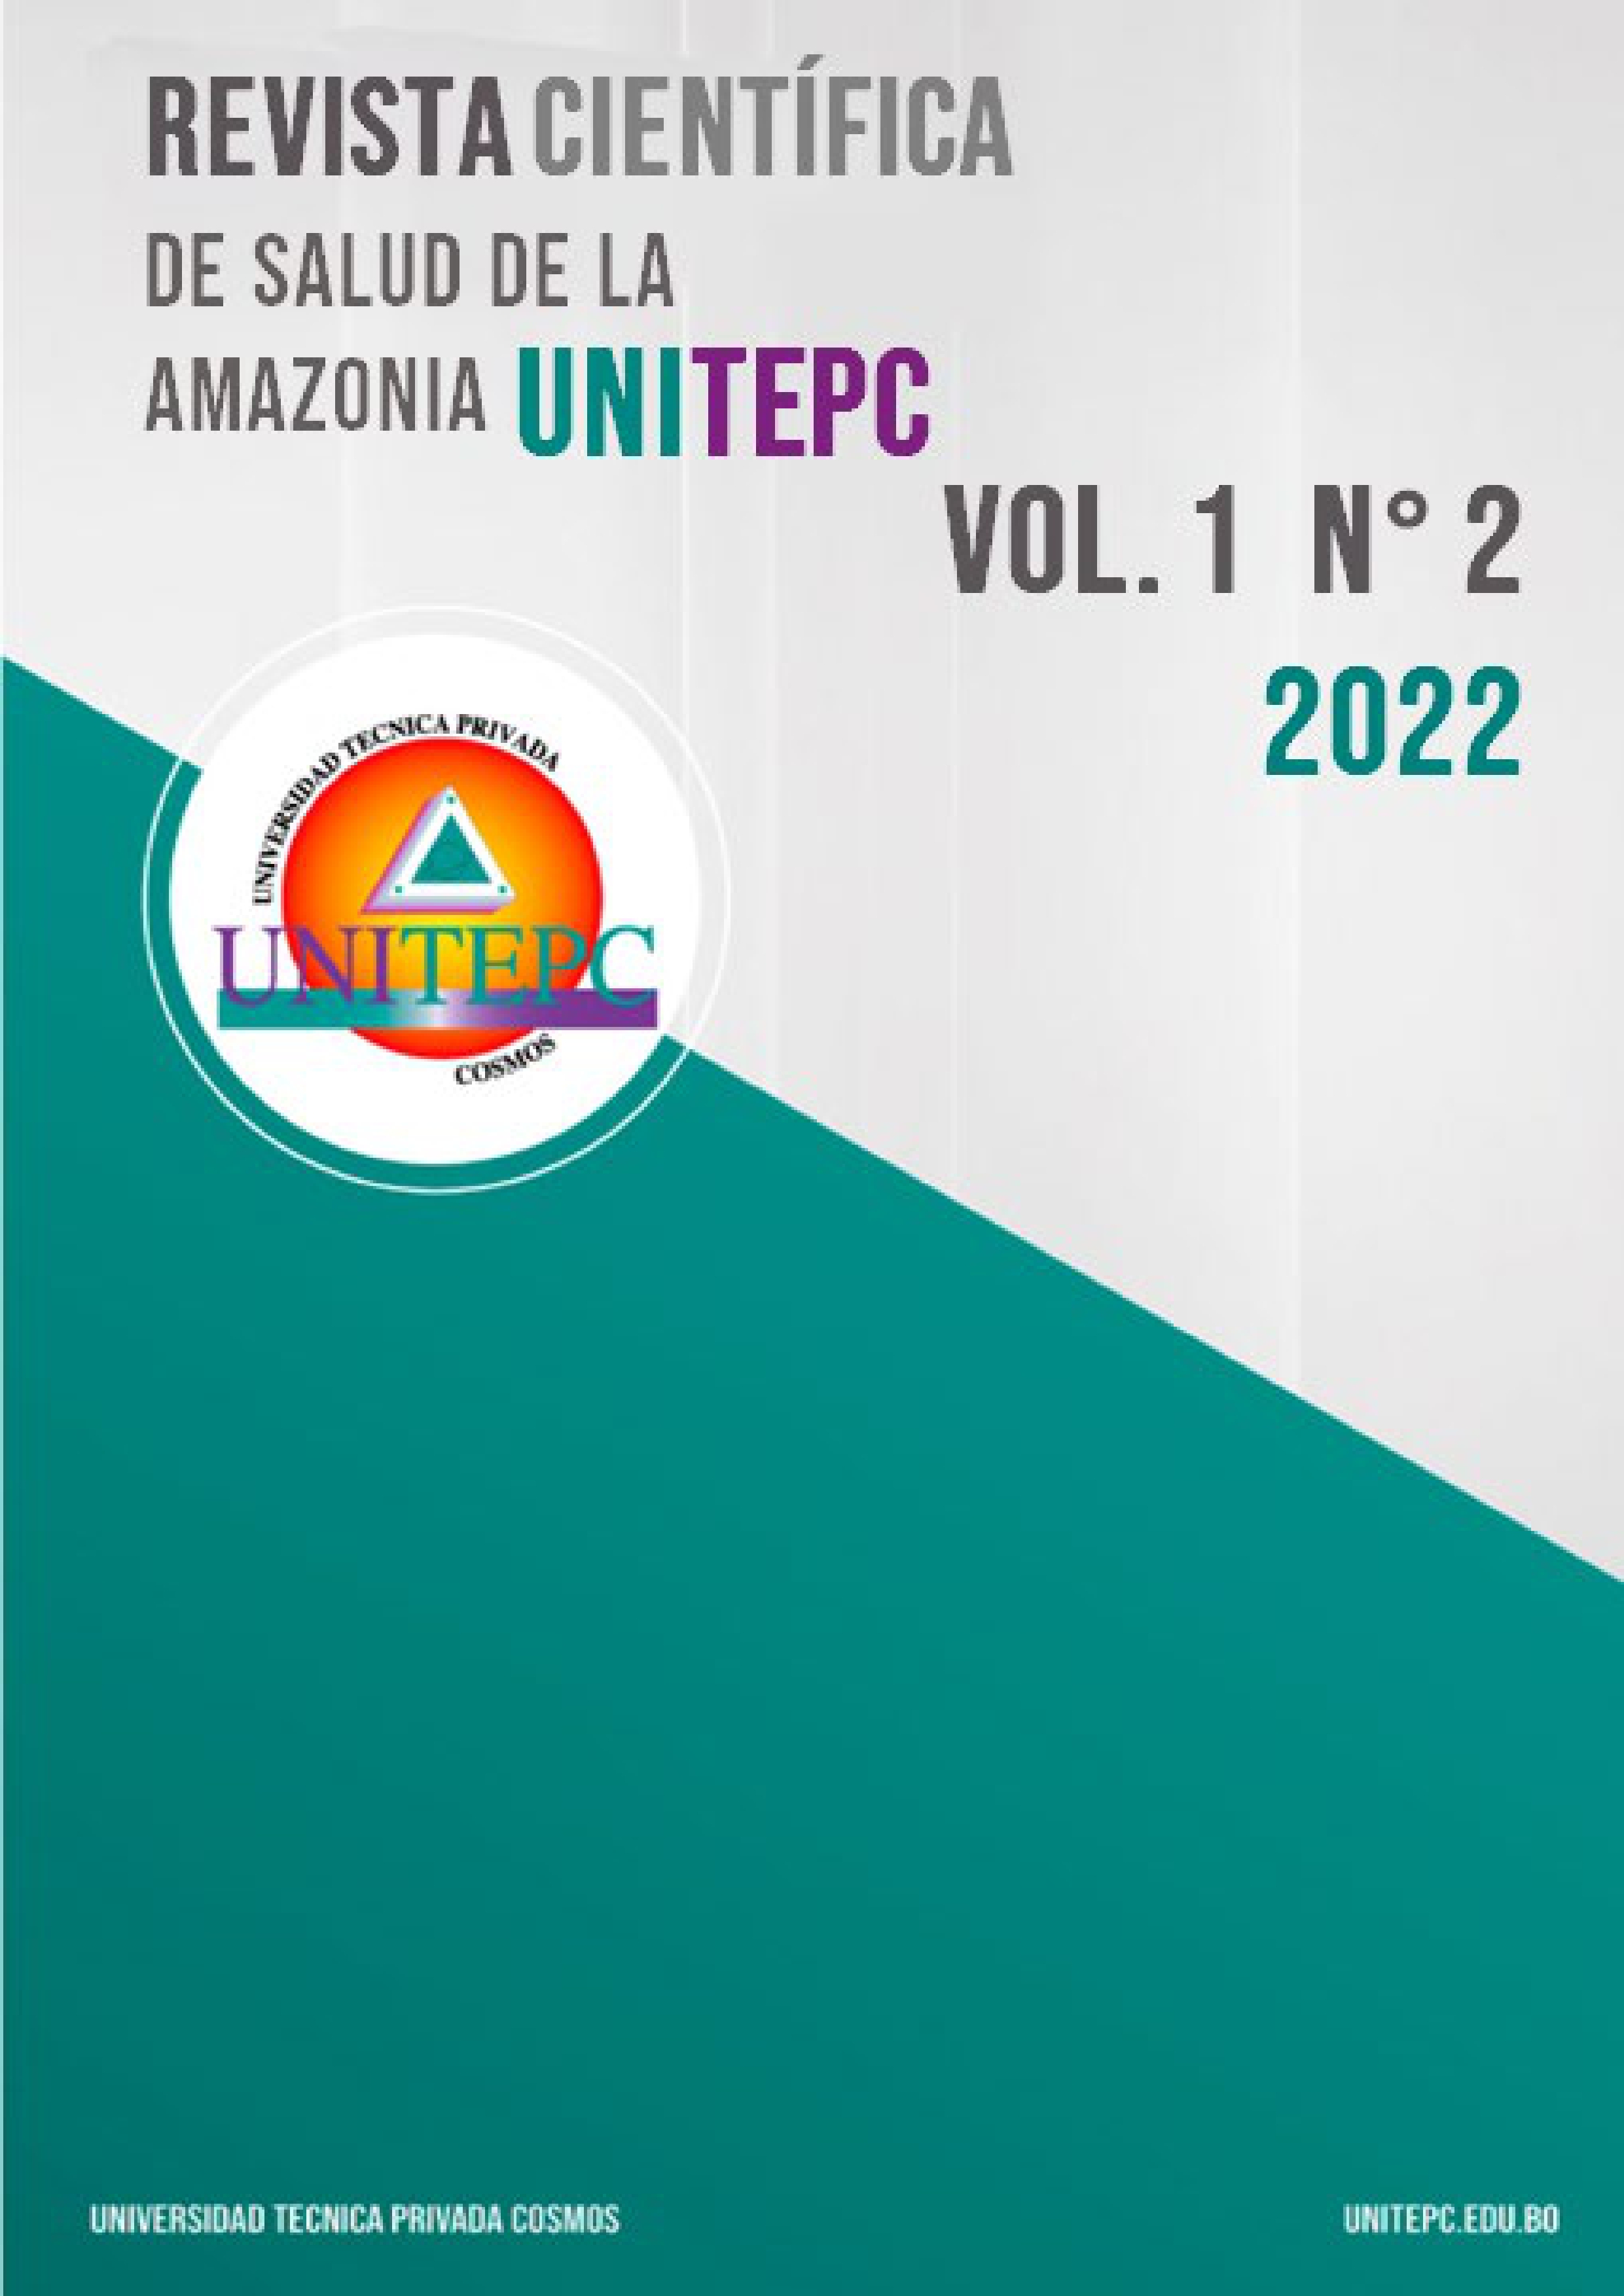 					View Vol. 1 No. 2 (2022): Revista Científica de Salud de la Amazonia UNITEPC
				